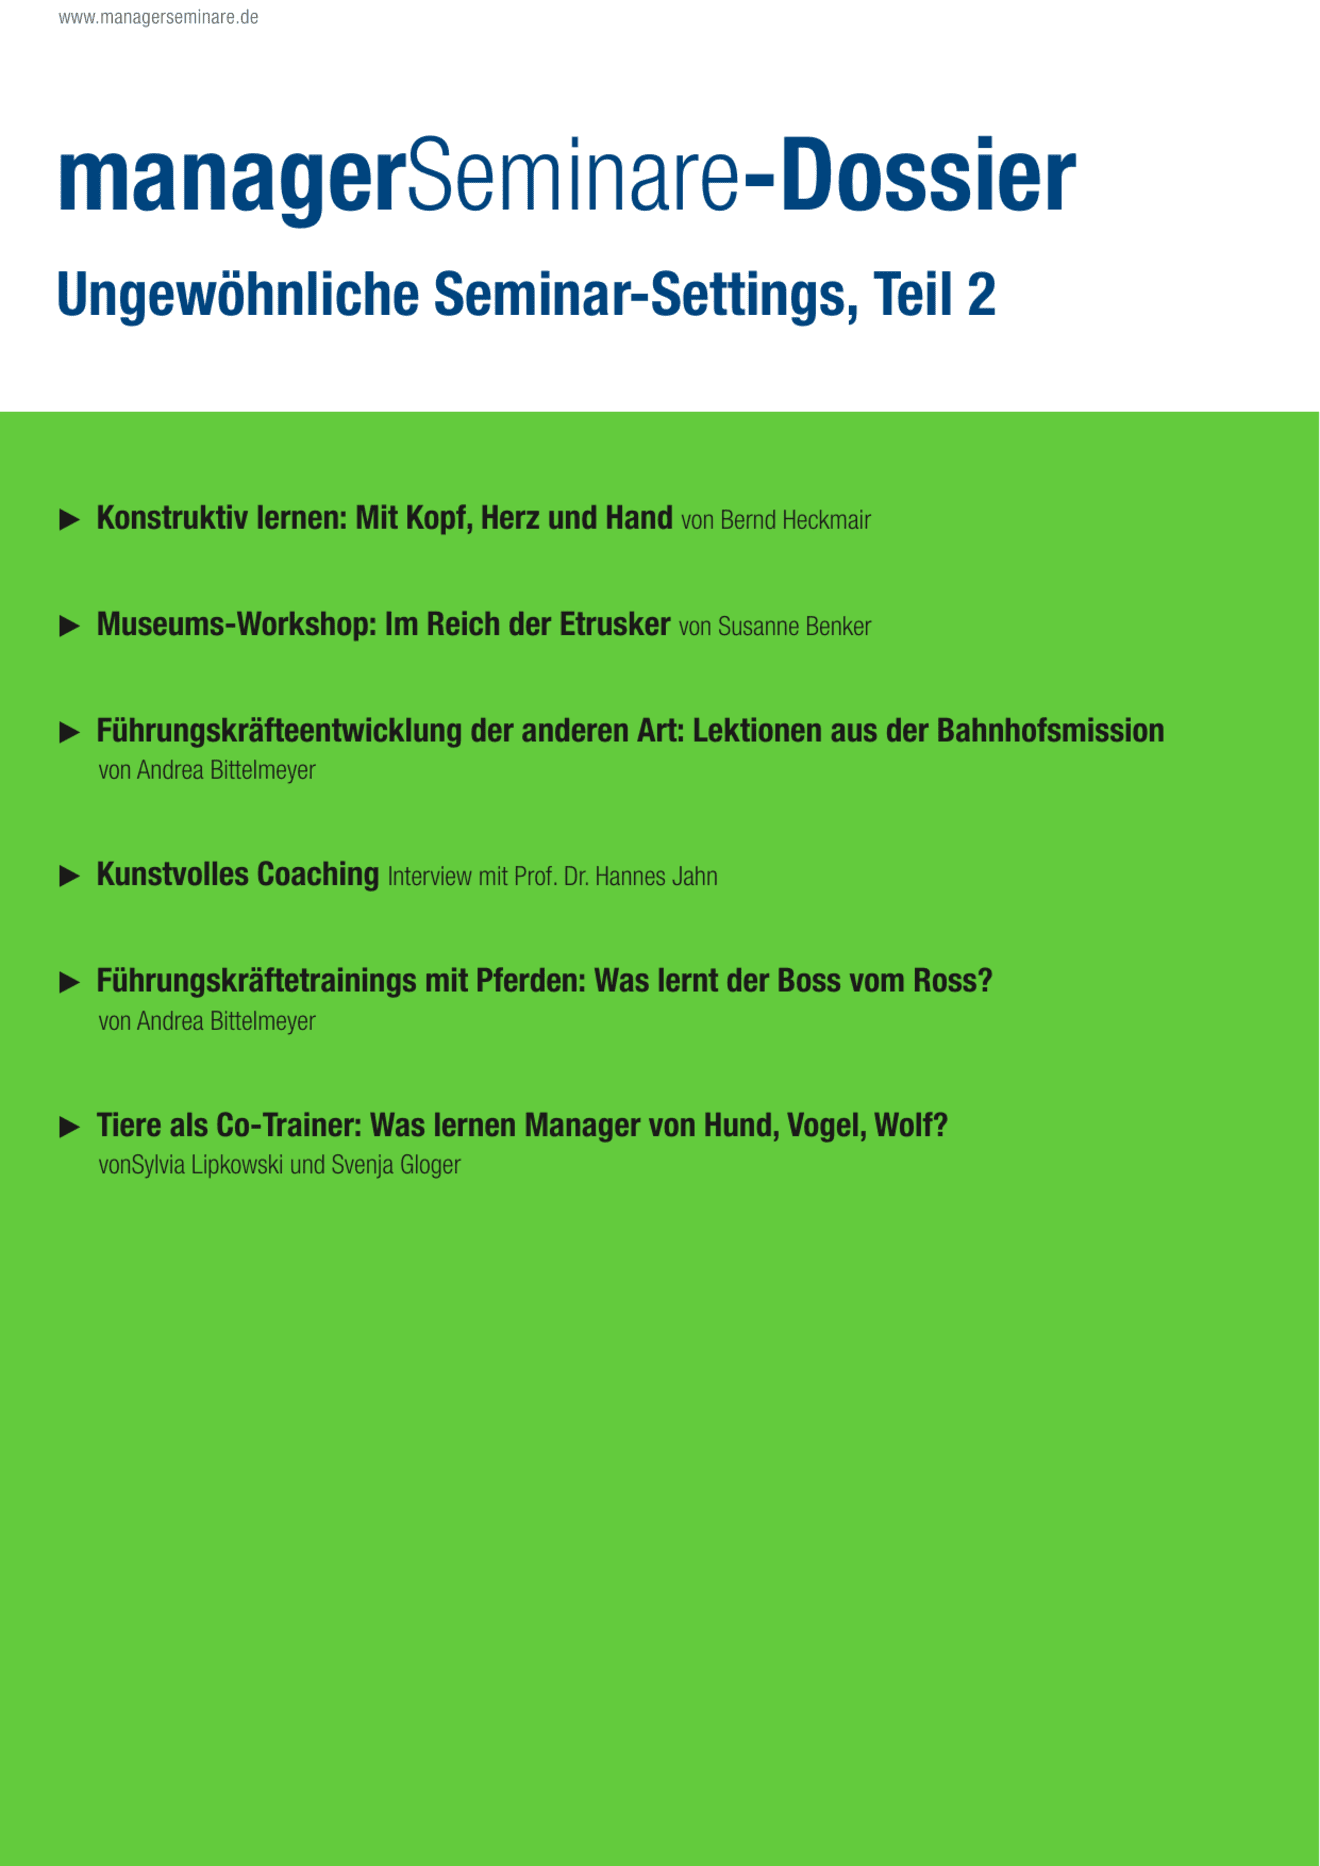 Dossier Ungewöhnliche Seminar-Settings II